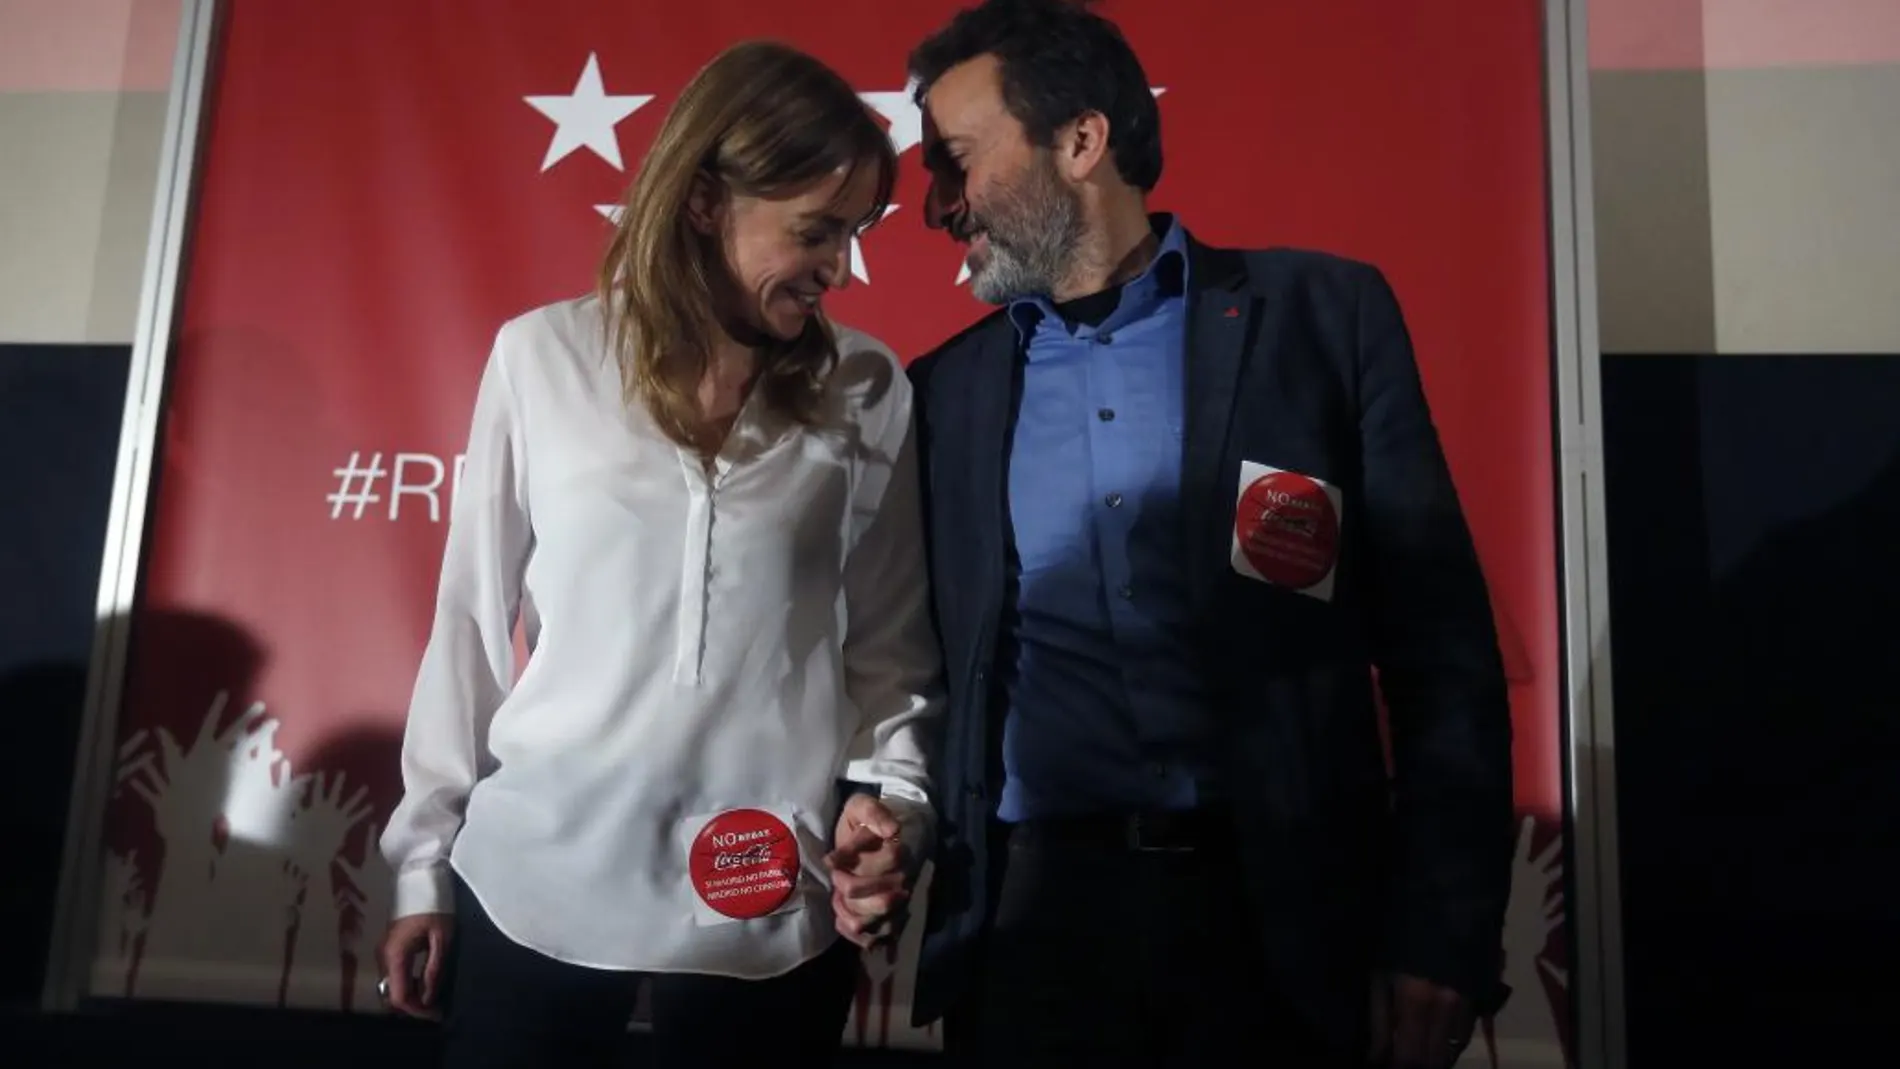 Valiente y Sánchez eran el tándem de candidatos de IU en Madrid